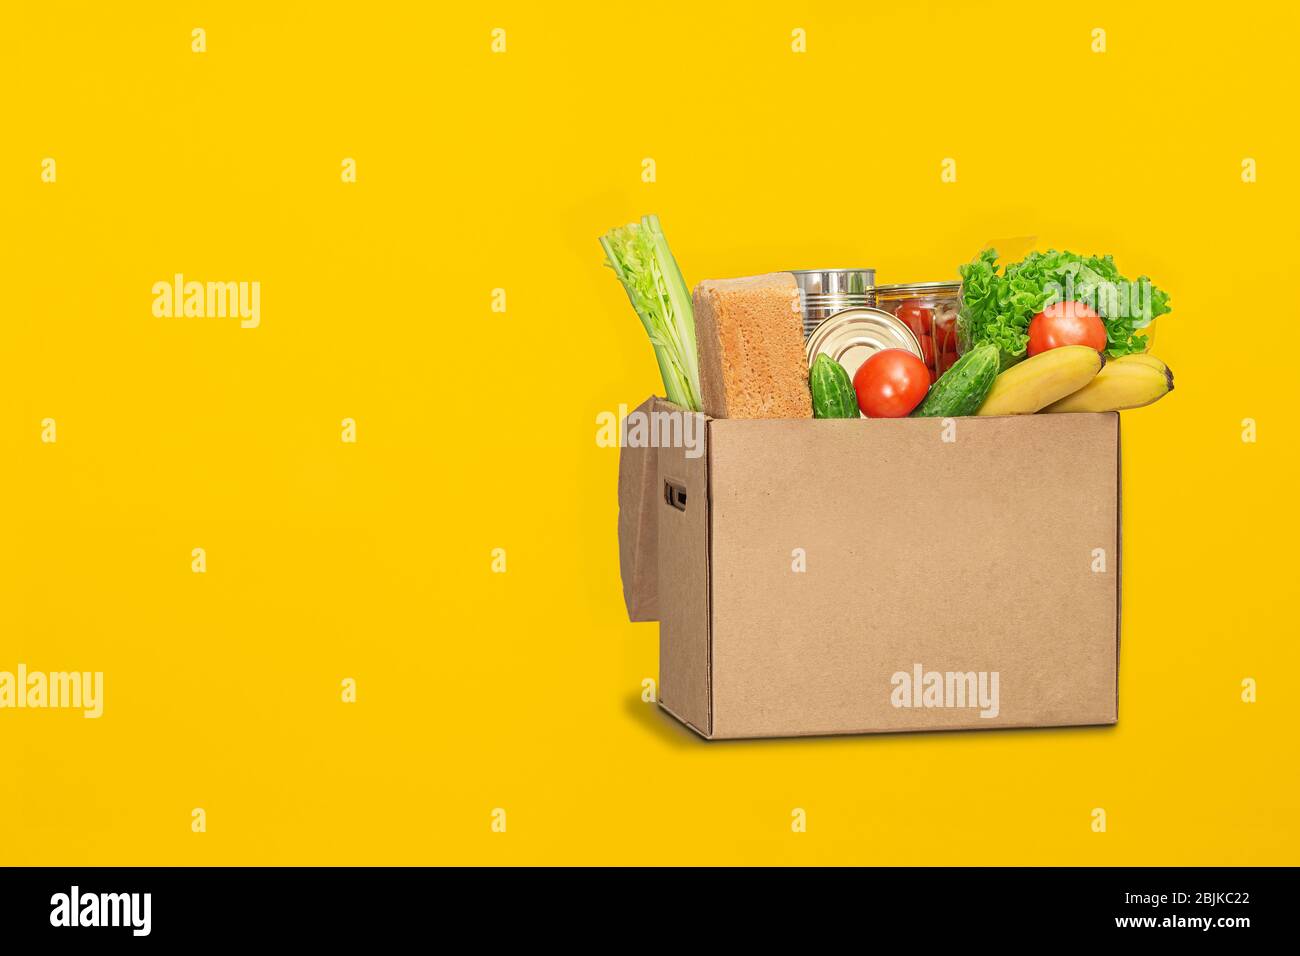 Spendenbox mit Lebensmitteln auf gelbem Hintergrund. Coronavirus Lebensmittel Lieferung. Freiwilliger bringt eine Schachtel mit Essen. Spende, Quarantäne Konzept. Freiwillige Kolle Stockfoto